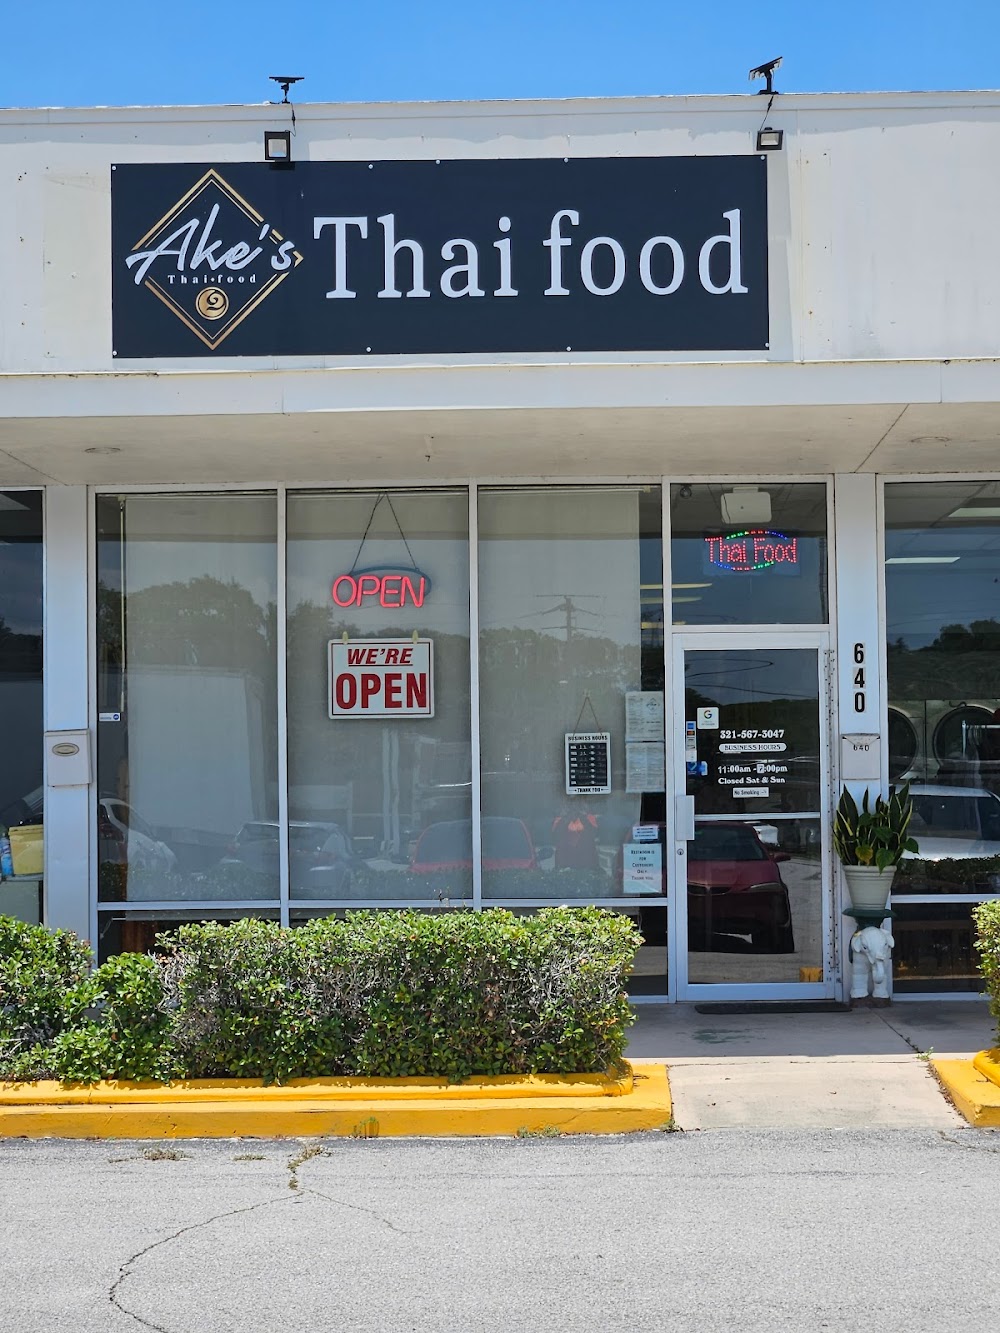 Ake’s Thai Food